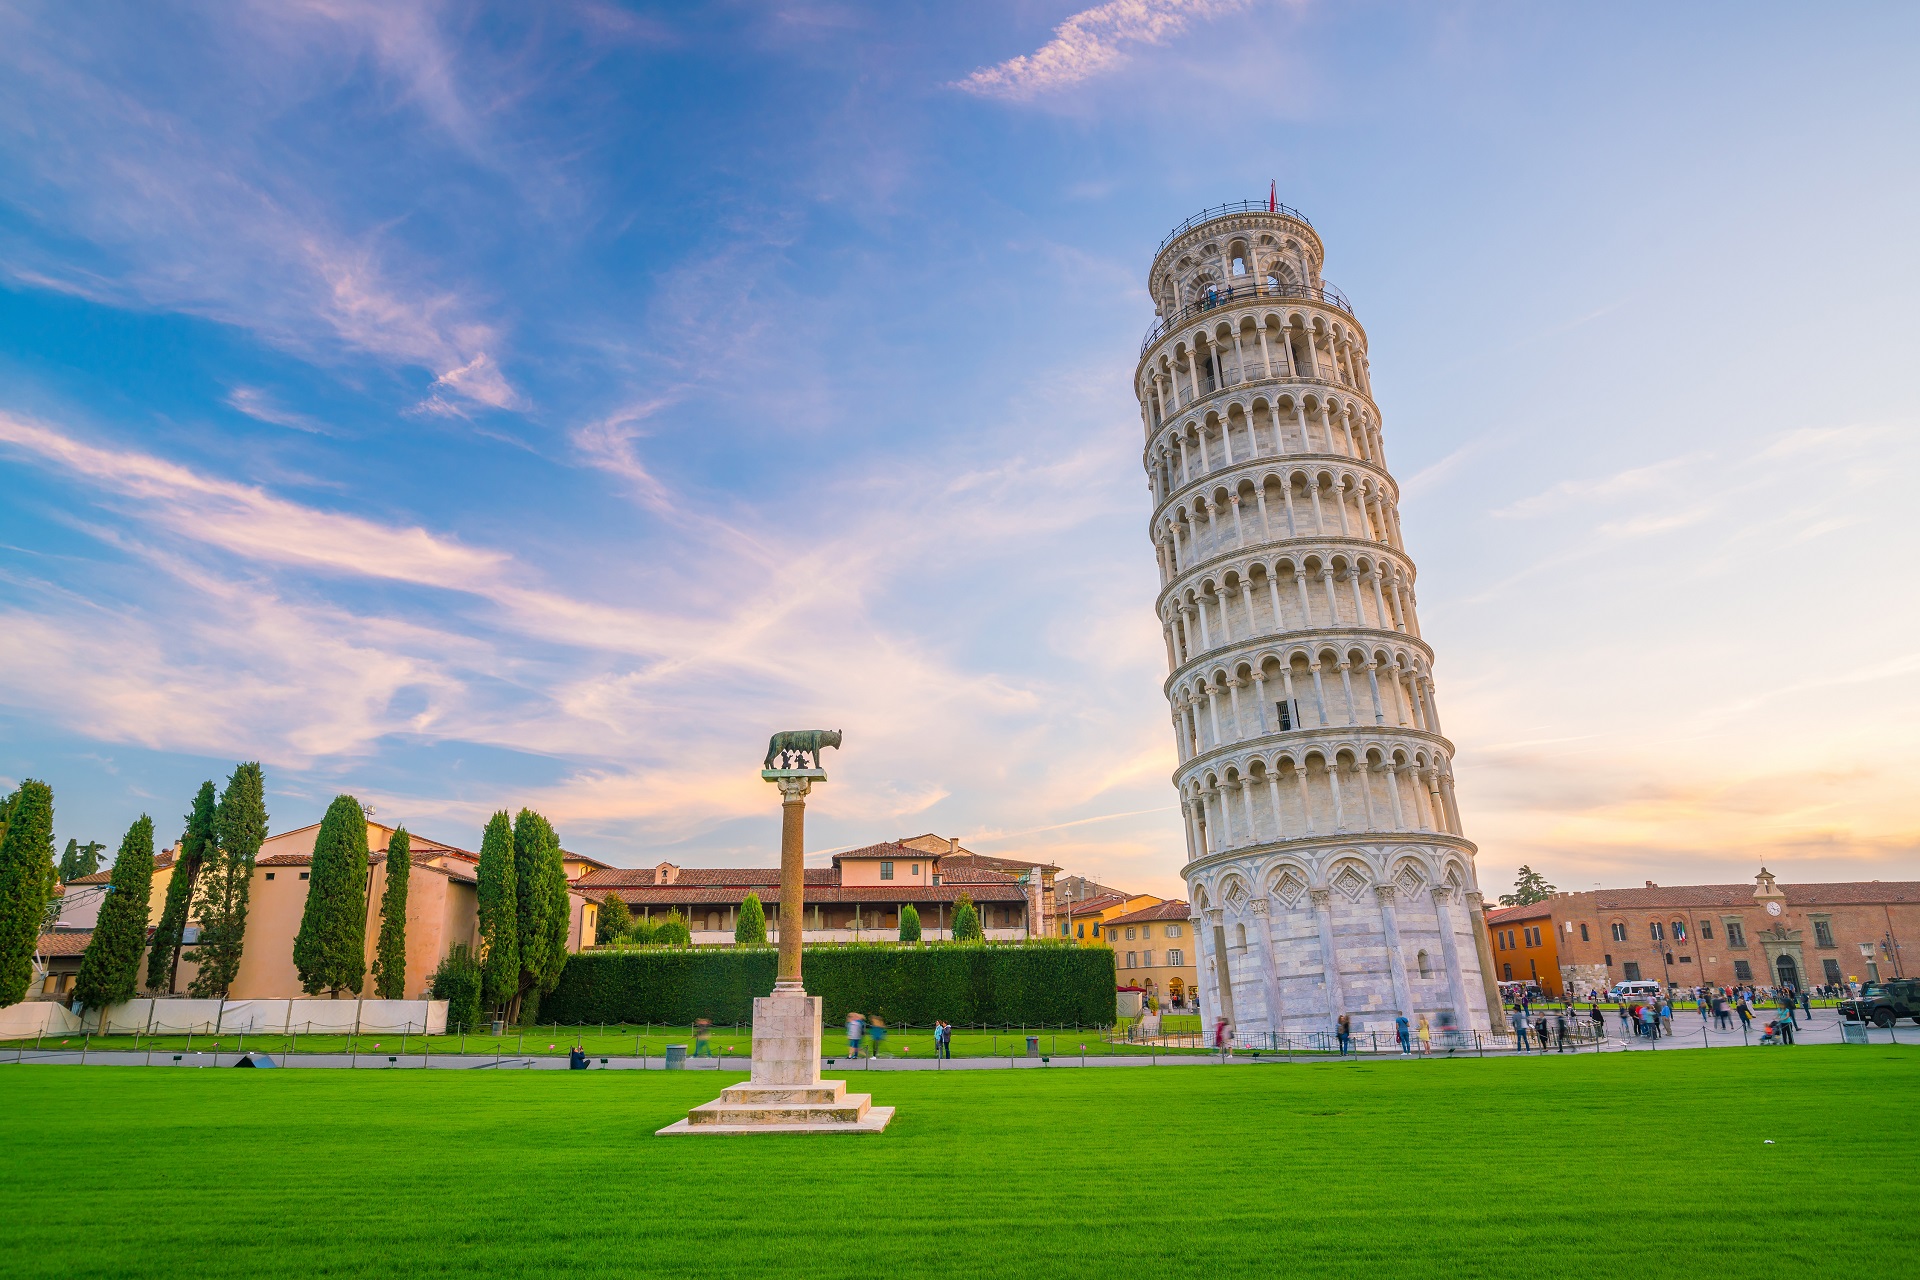 Tháp nghiêng Pisa – Biểu tượng kiến trúc kỳ lạ của nước Ý - iVIVU.com